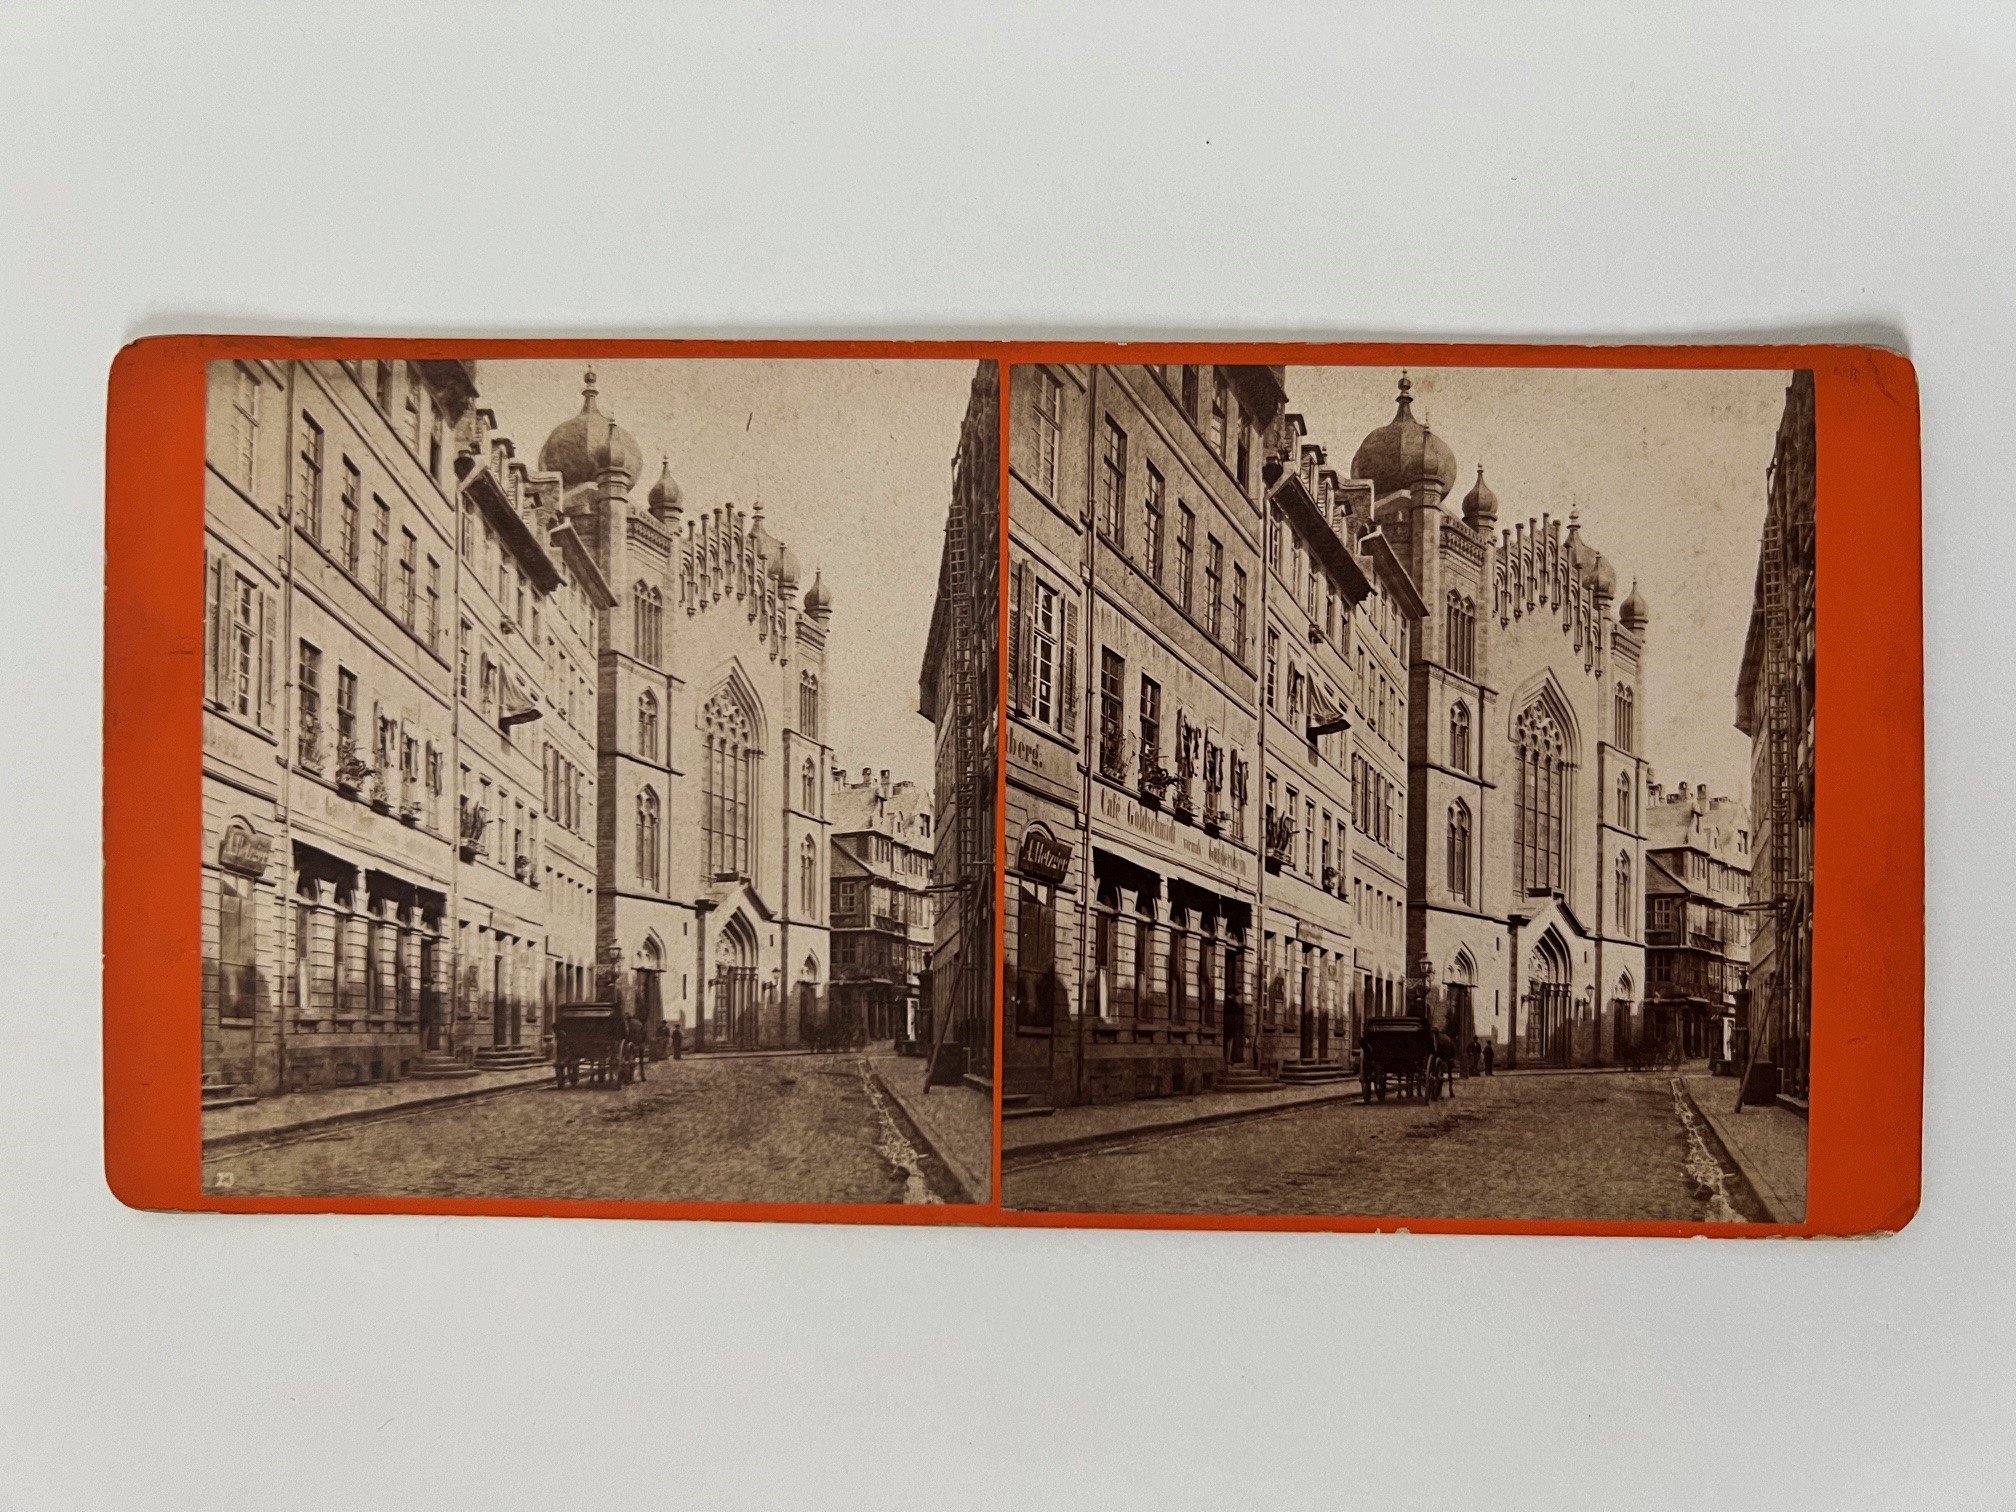 Stereobild, Frantisek Fridrich, Nr. 23, Judengasse mit Synagoge, ca. 1870. (Taunus-Rhein-Main - Regionalgeschichtliche Sammlung Dr. Stefan Naas CC BY-NC-SA)